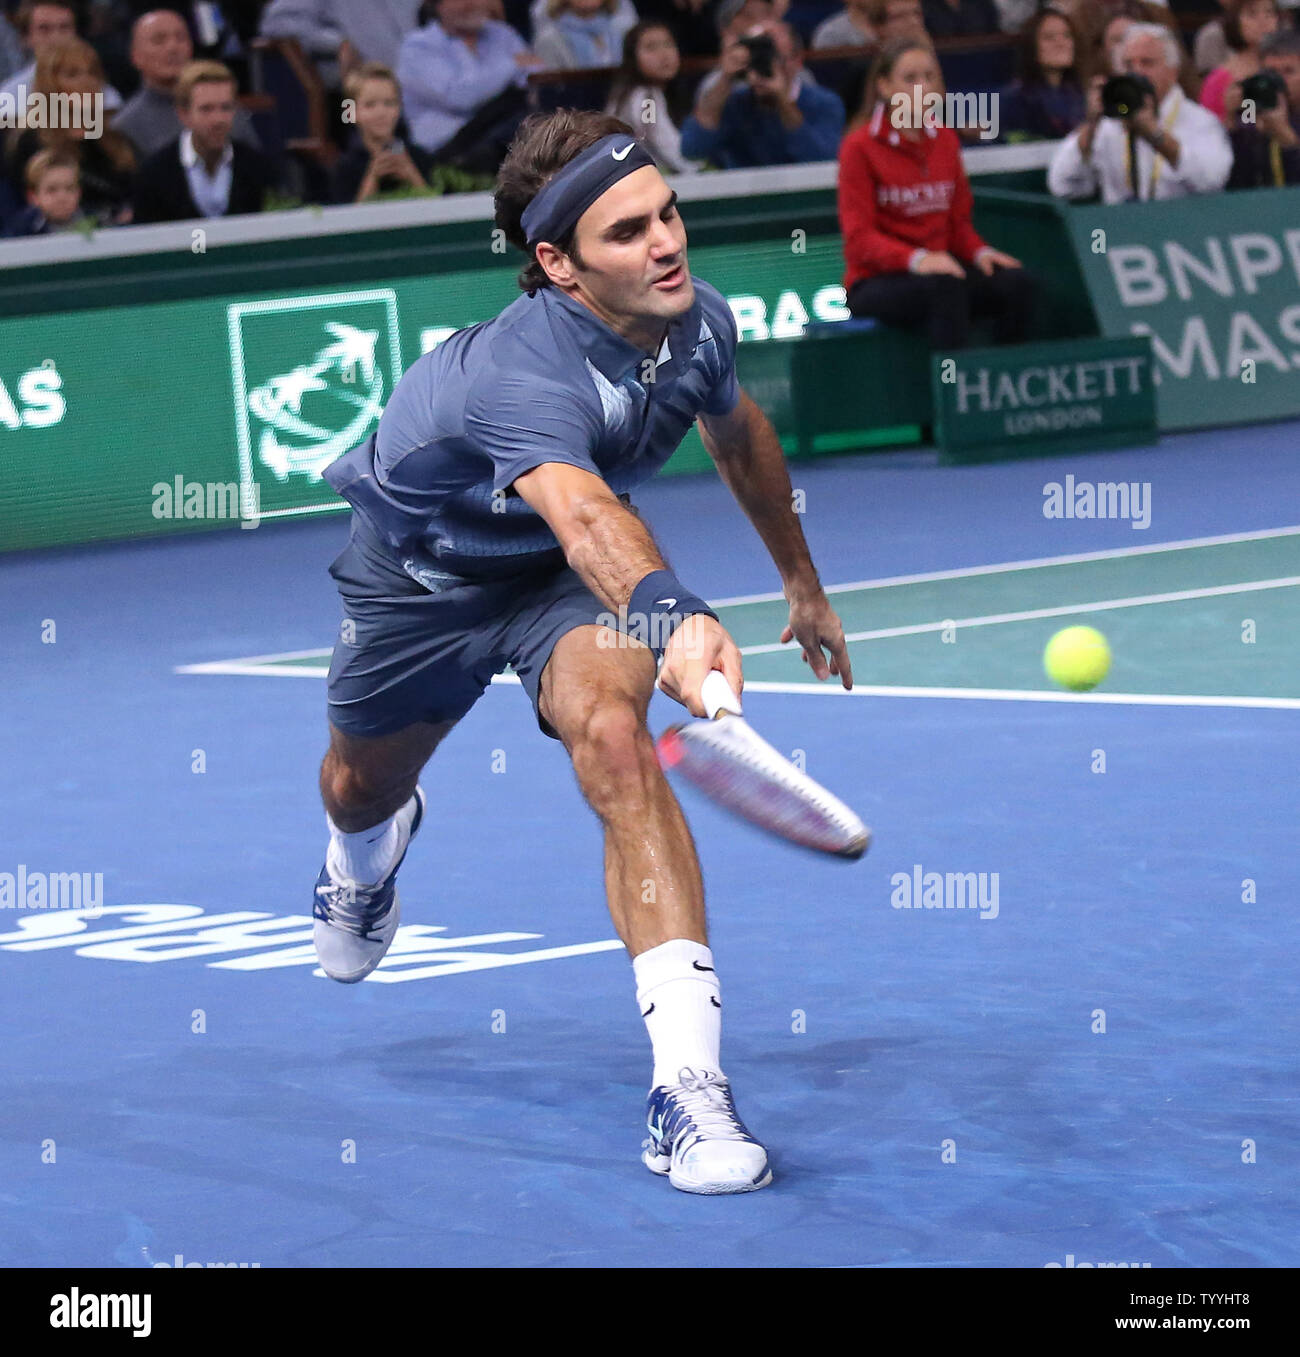 Roger Federer von der Schweiz erreicht, die für einen Schuß während seines BNP Paribas Masters Viertelfinale Match gegen Juan Martin Del Potro aus Argentinien in Paris am 1. November 2013. Federer besiegt del Potro 6-3, 4-6, 6-3 das Halbfinale. UPI/David Silpa Stockfoto